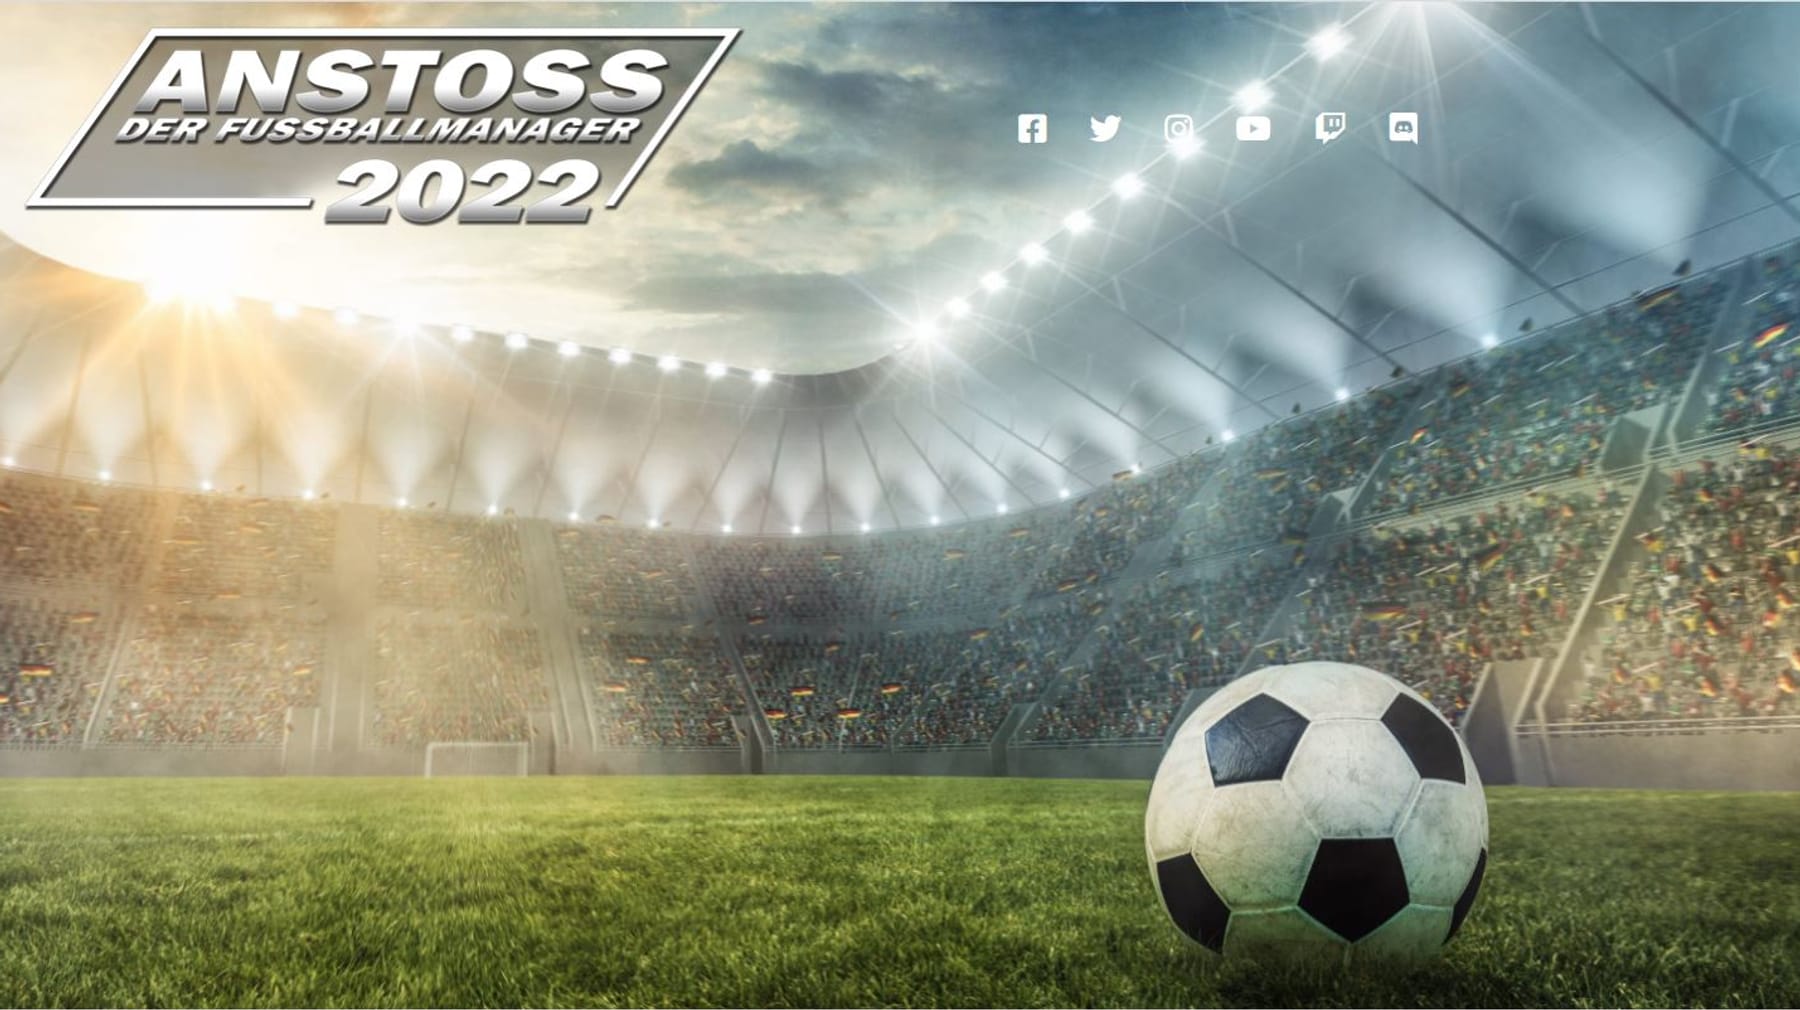 Anstoss 2022 wird ein Fußballmanager wie früher, aber nicht altmodisch